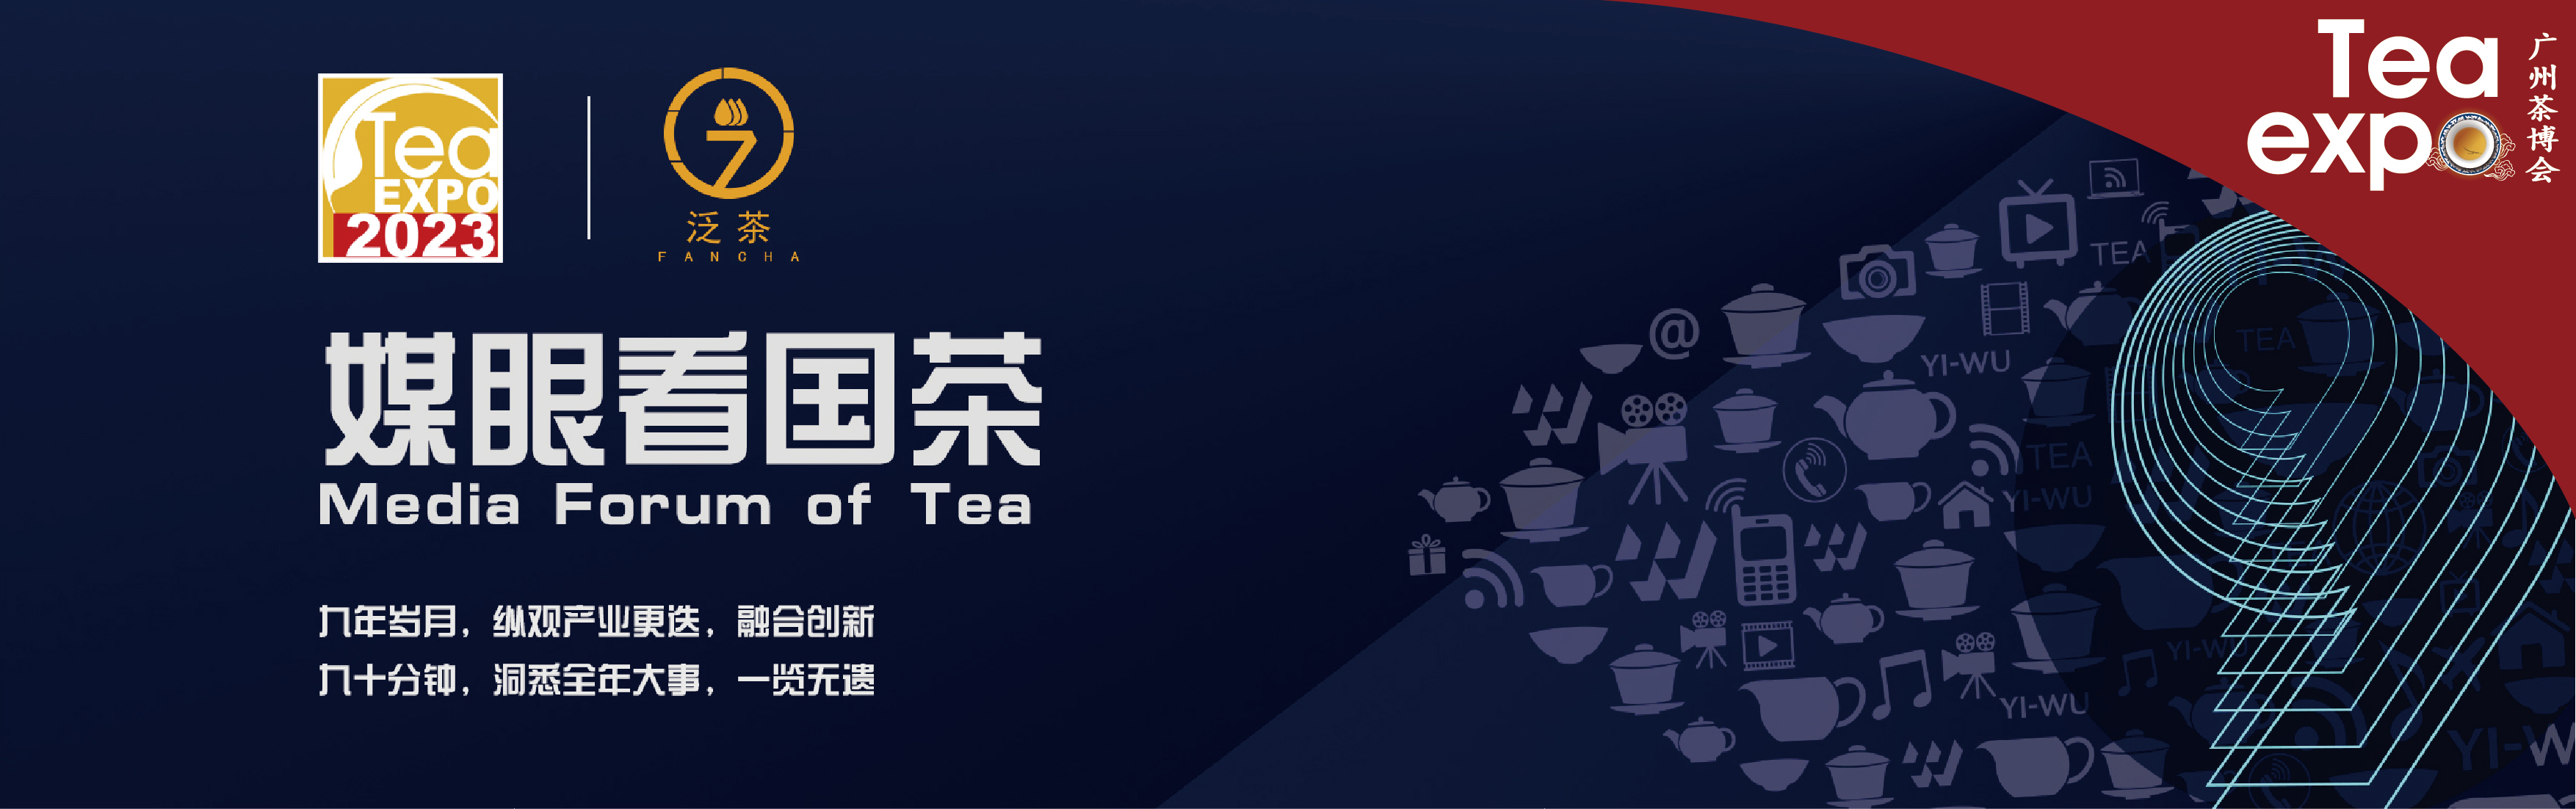 广州茶博会 天津茶博会